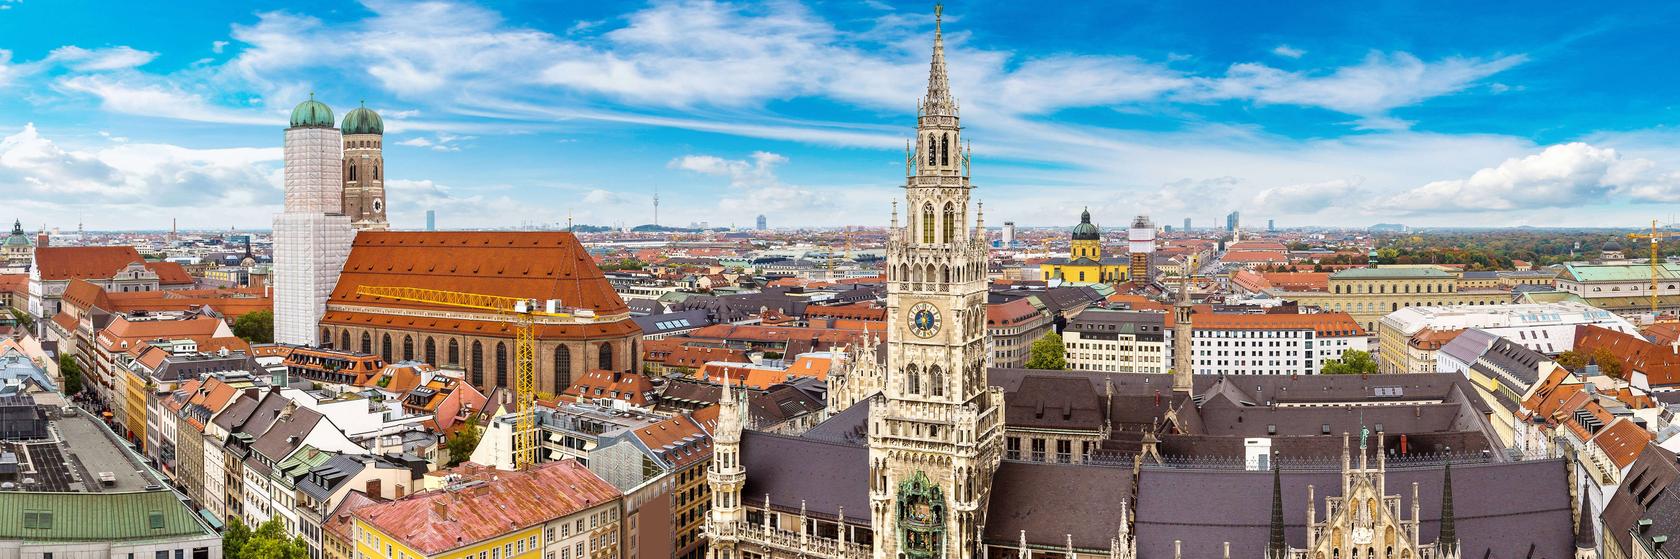 Tipy na výlety v Mnichově